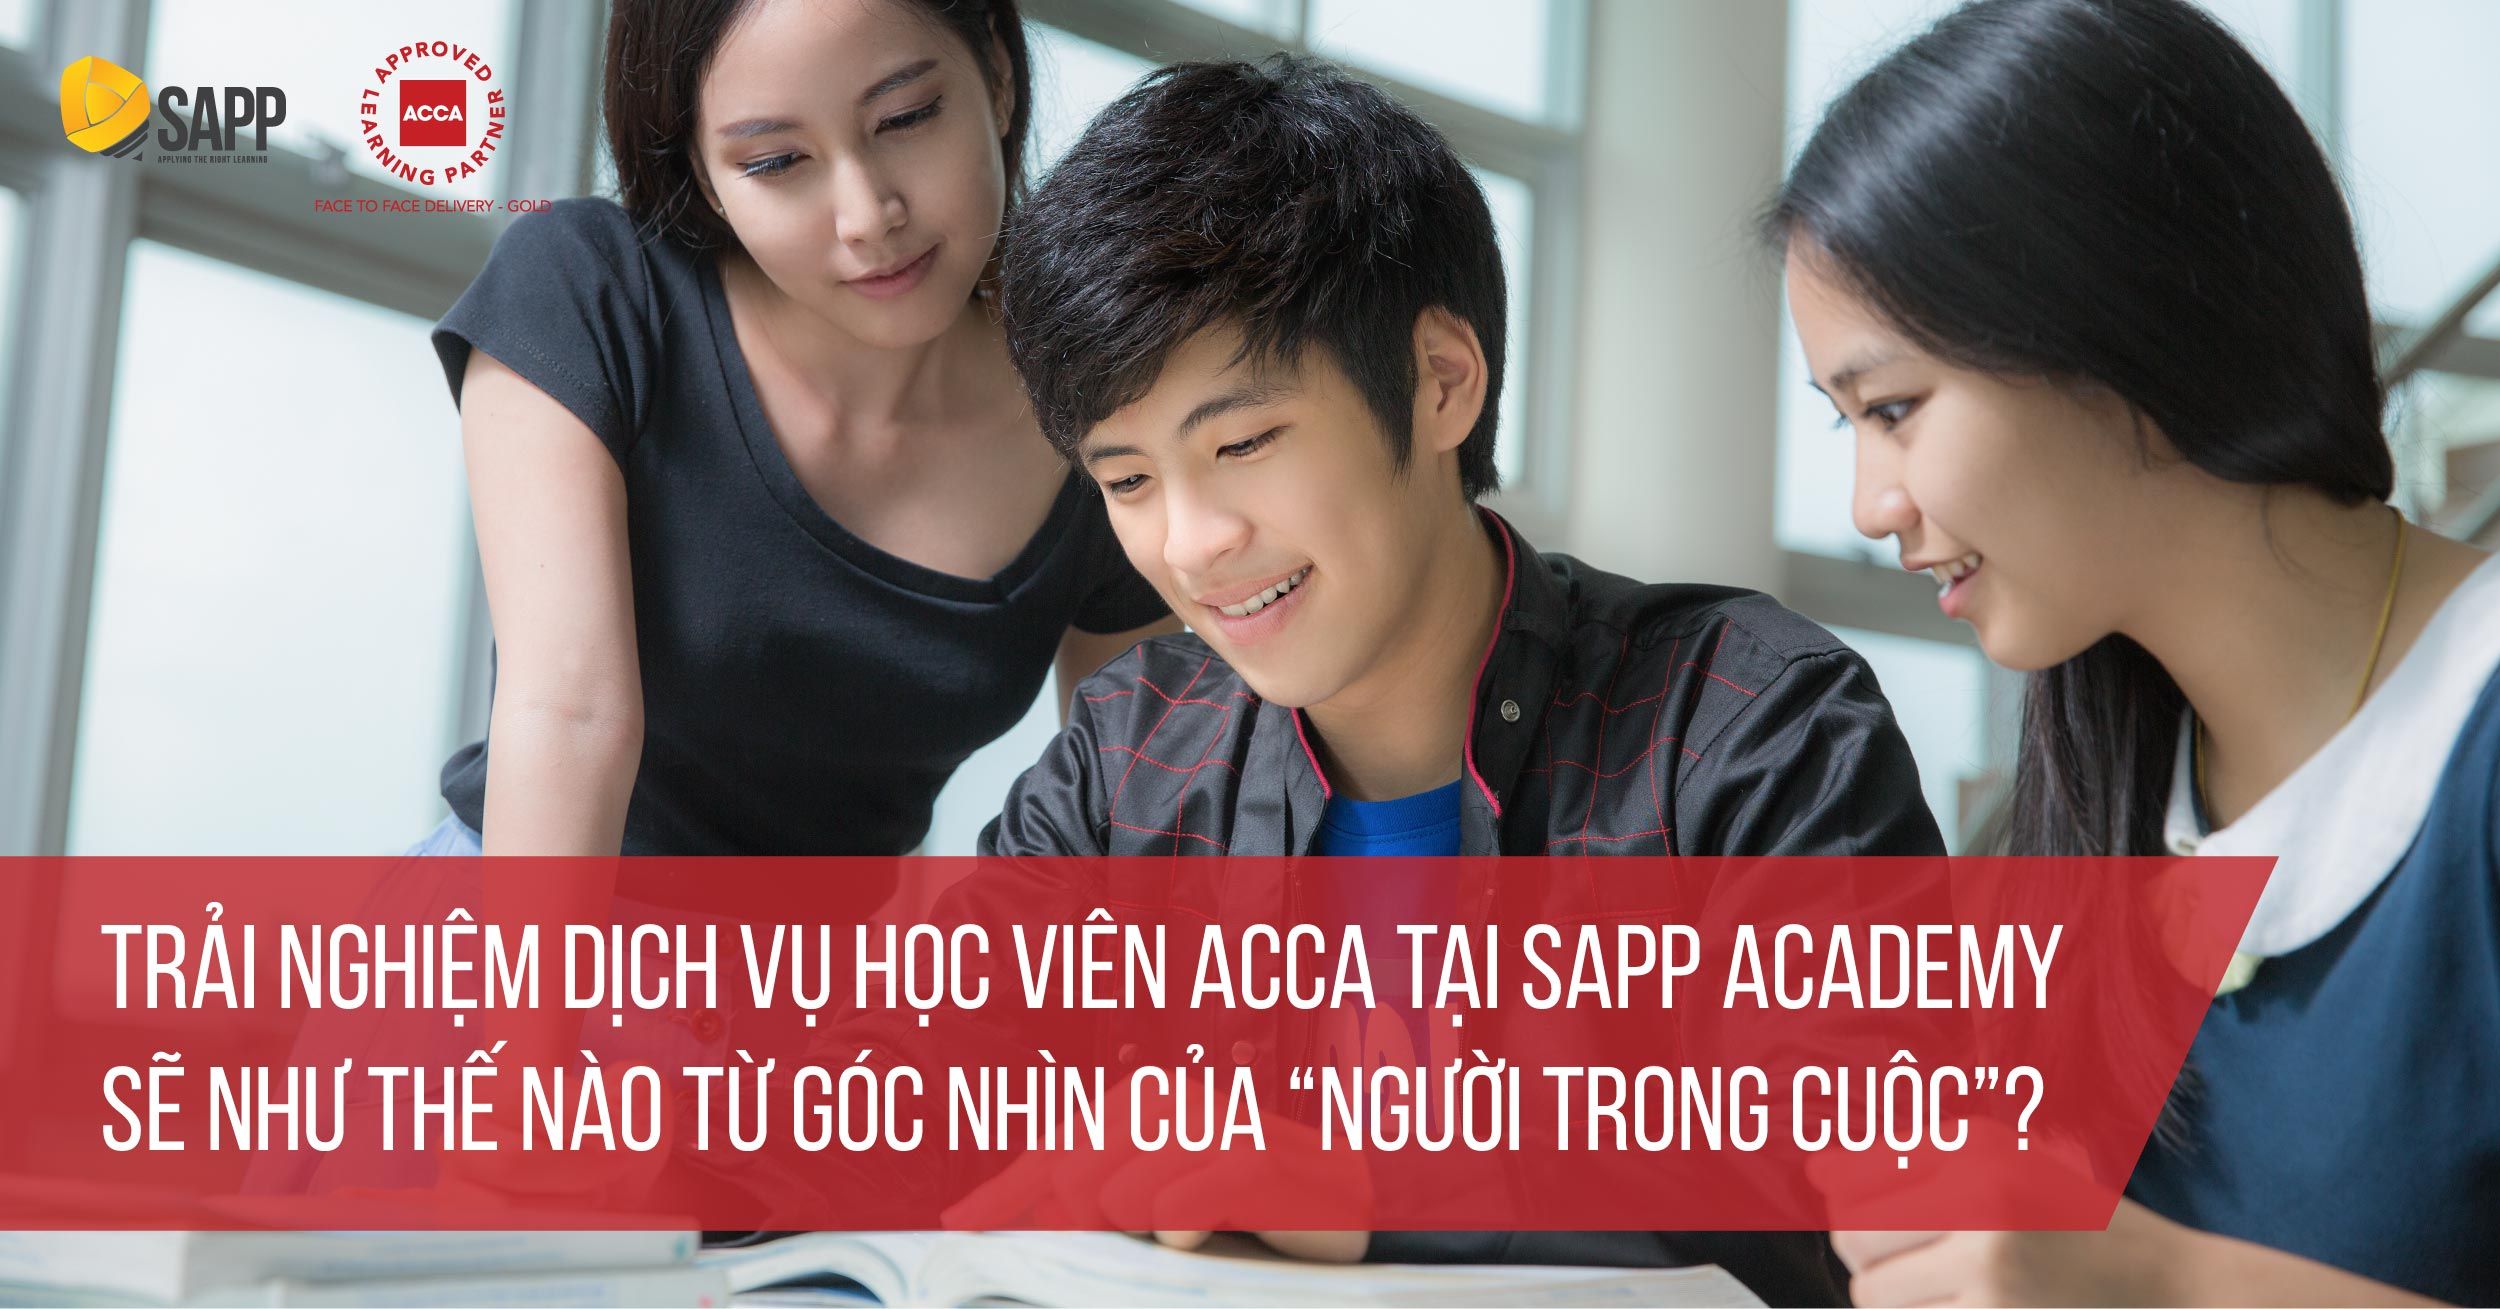 Trải Nghiệm Dịch vụ Học Viên ACCA Tại SAPP Academy Sẽ Như Thế Nào Từ Góc Nhìn Của 